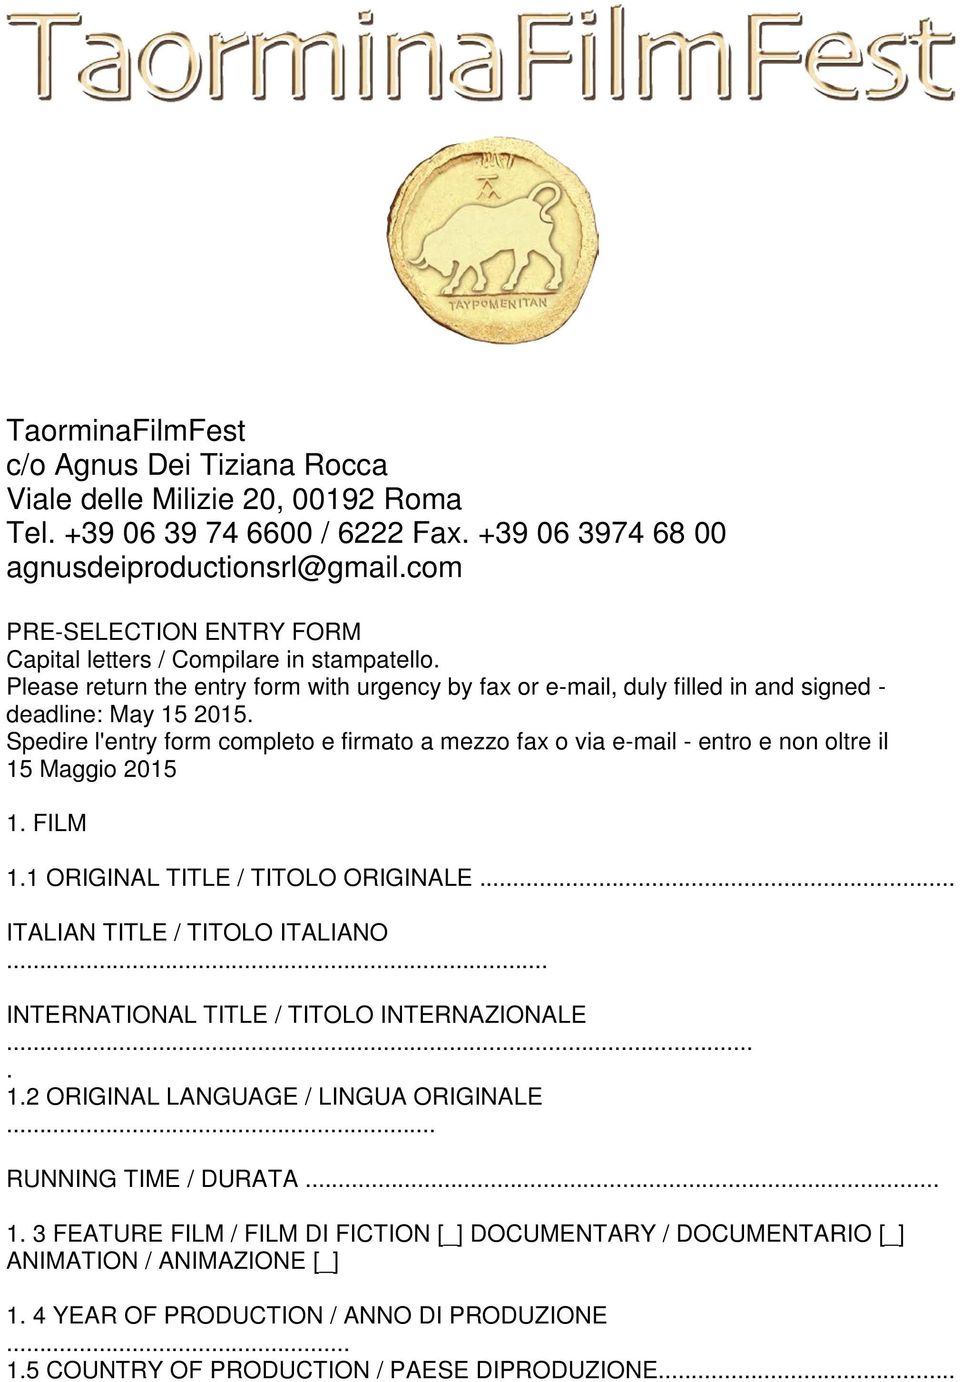 via e-mail - entro e non oltre il 15 Maggio 2015 1 FILM 11 ORIGINAL TITLE / TITOLO ORIGINALE ITALIAN TITLE / TITOLO ITALIANO INTERNATIONAL TITLE / TITOLO INTERNAZIONALE 12 ORIGINAL LANGUAGE / LINGUA